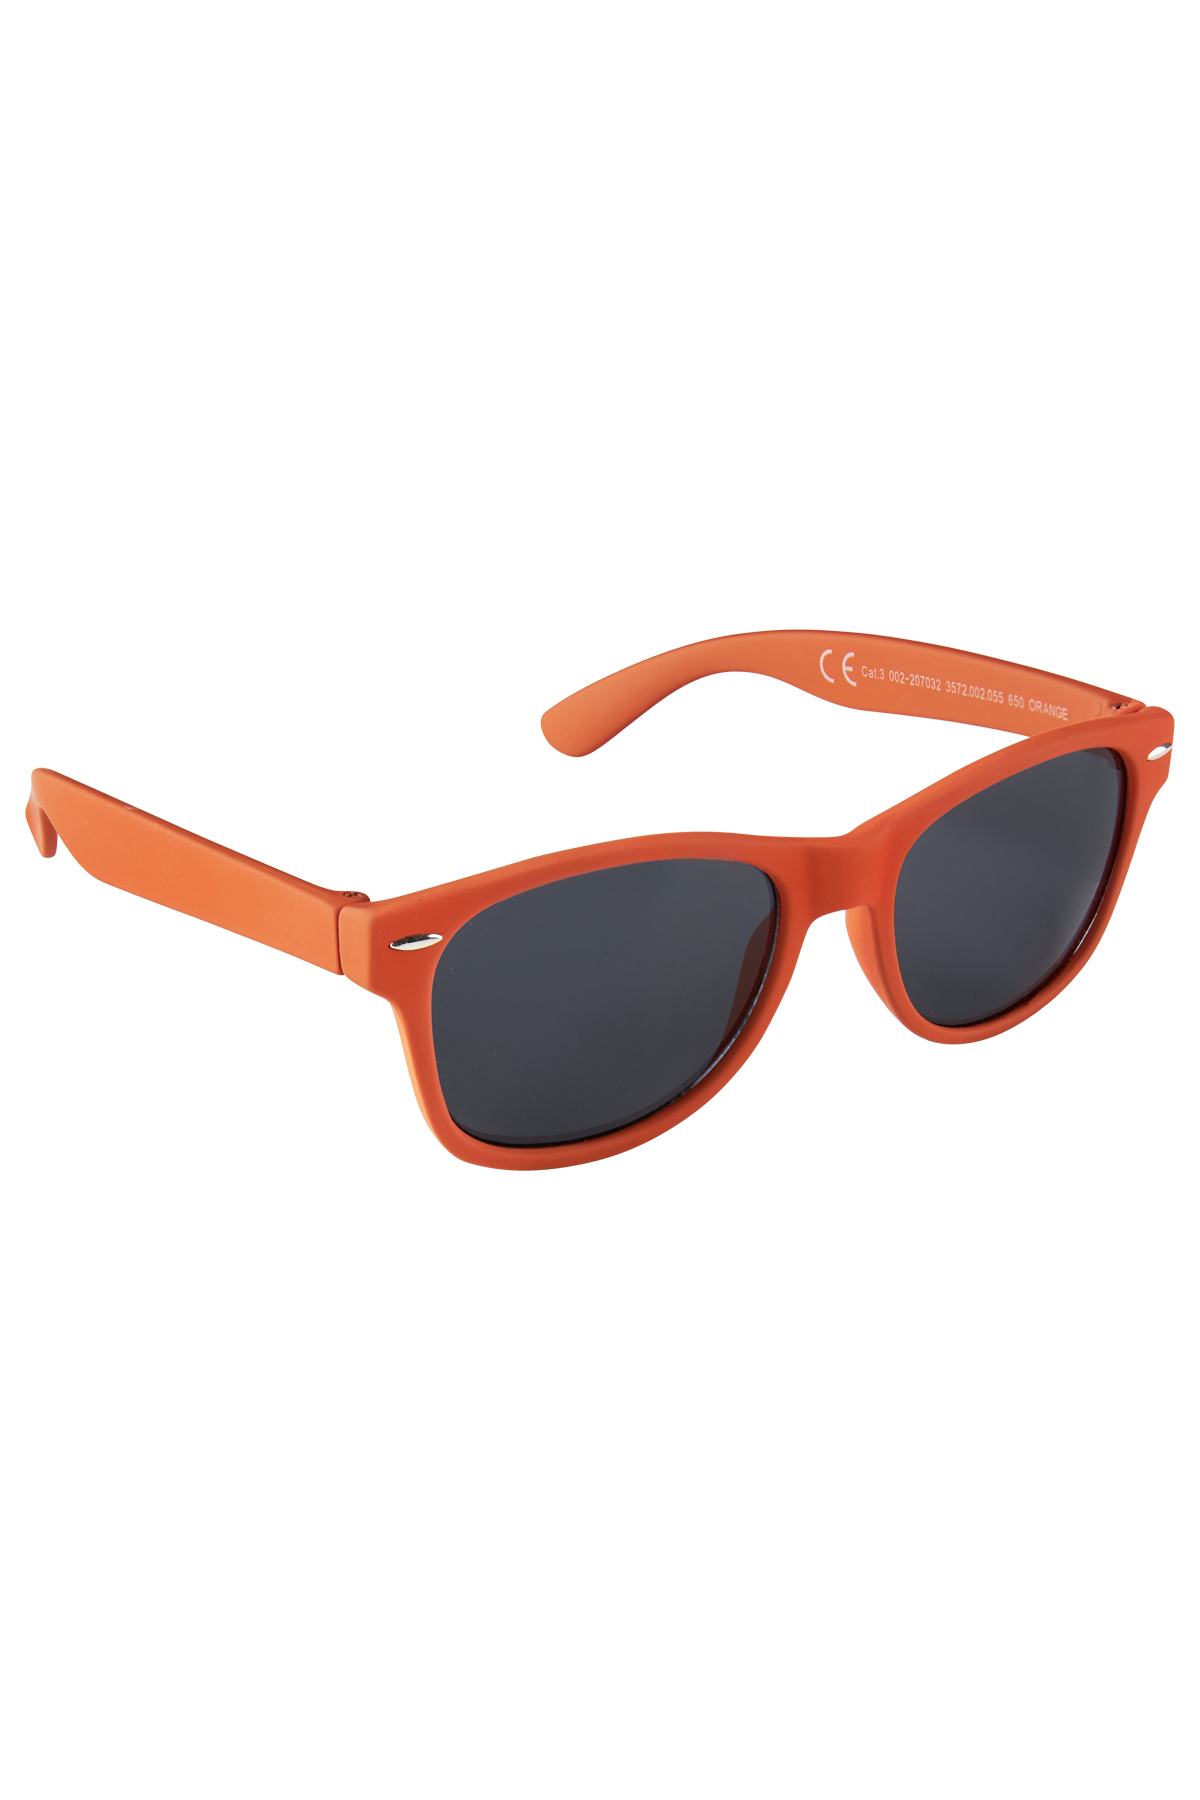 Jungen Sonnenbrille Sonnenbrille mit UV-Schutz Orange Online Kaufen